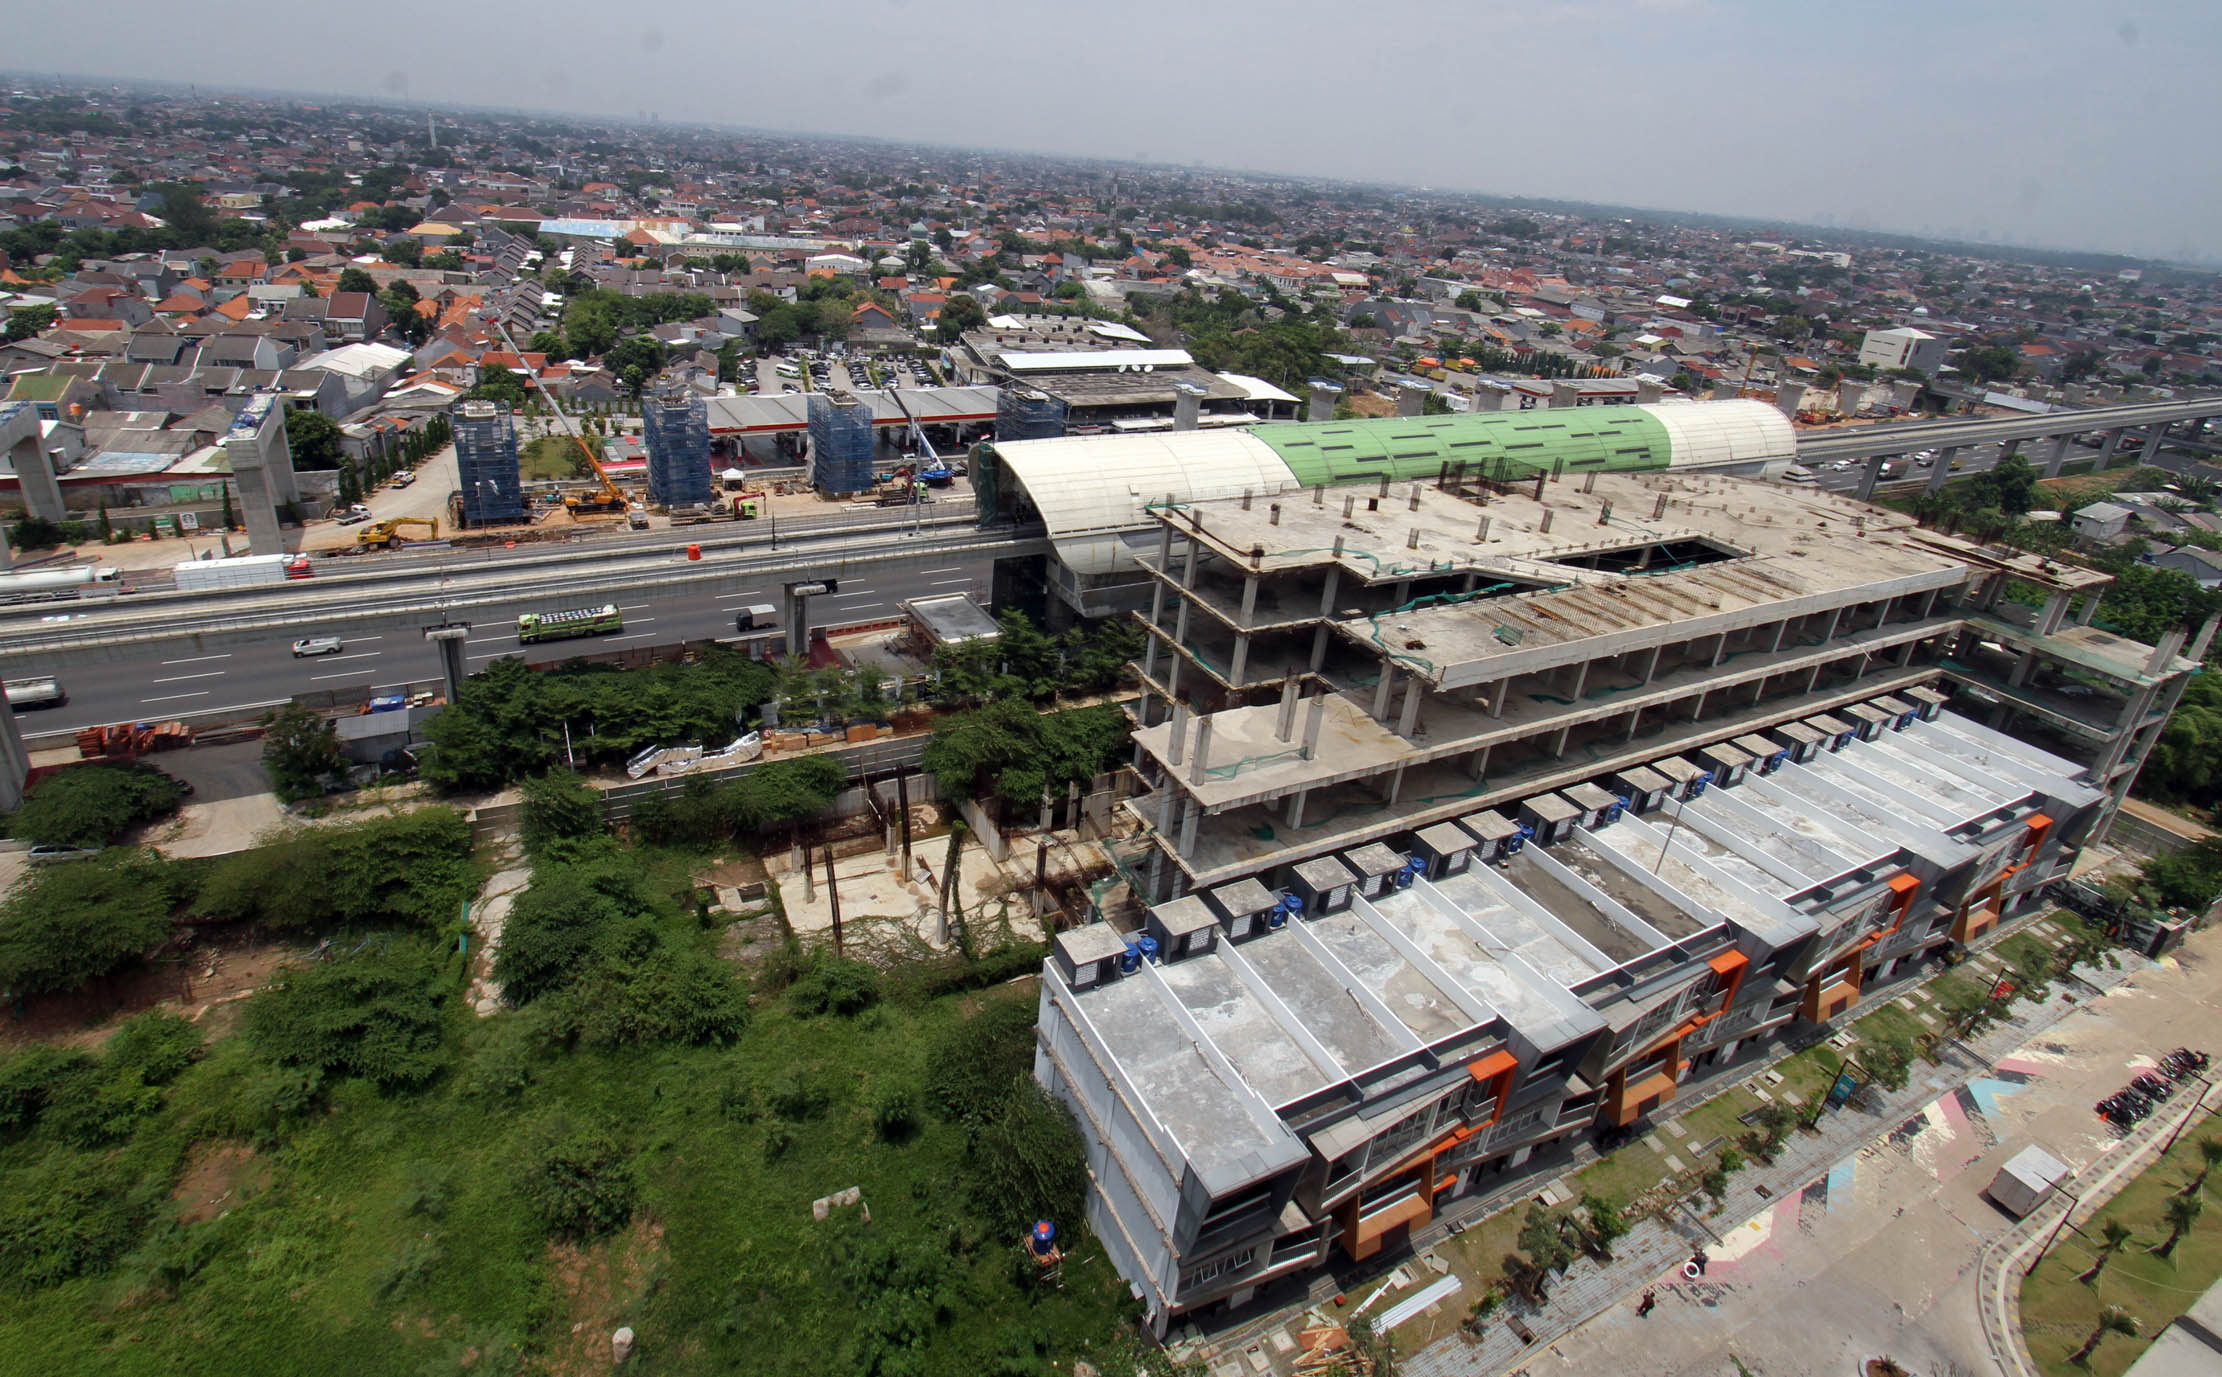 LRT City Jatibening merupakan salah satu dari 11 proyek hunian konsep Transit Oriented Development (TOD) yang sedang berjalan dari PT Adhi Commuter Properti (ADCP), pengembang properti terintegrasi dengan transportasi massal pertama dan terbesar di Indonesia. Foto : Panji Asmoro/TrenAsia